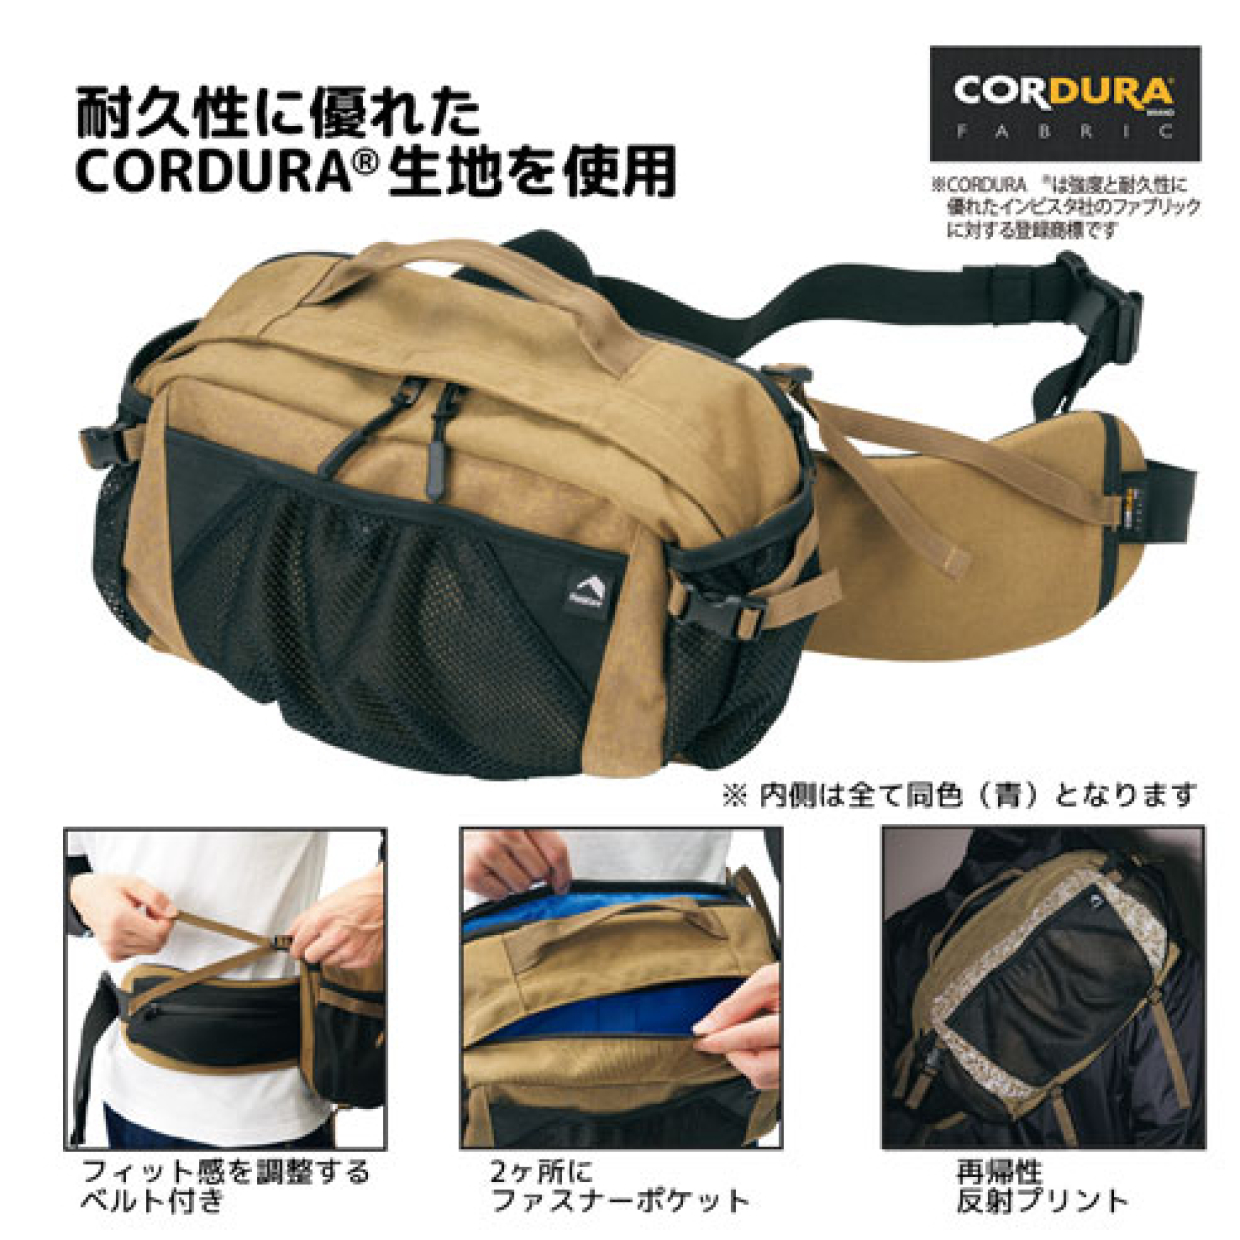  【ワークマン】驚くほど荷物が入る「コーデュラボディーバック」は負担を感じにくい優良バッグ 